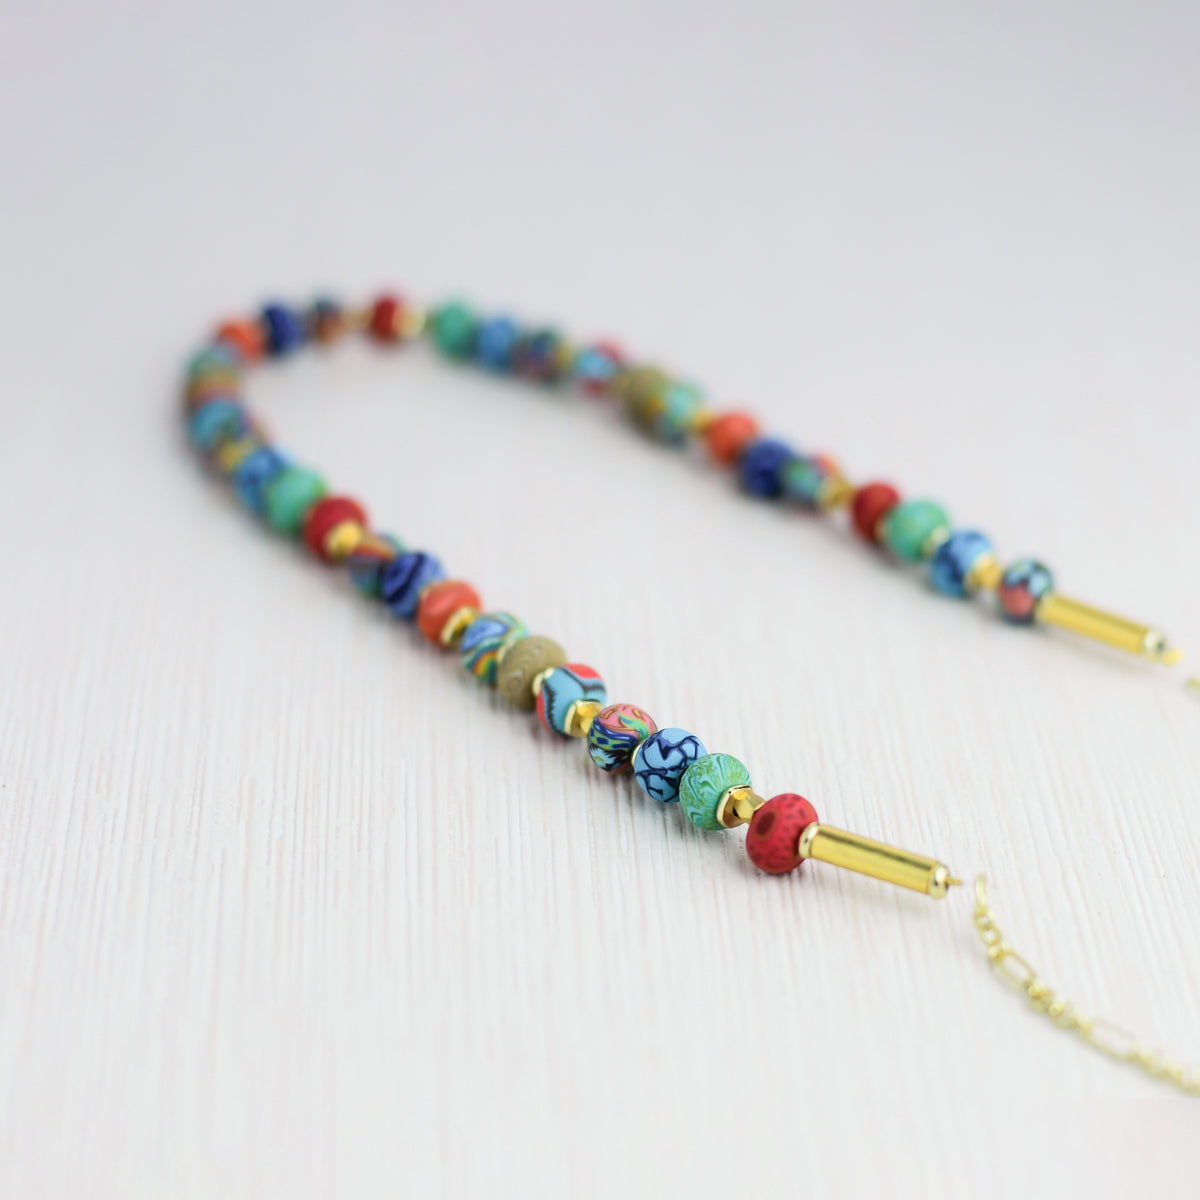 Sedona Sky Beaded Chain Necklace